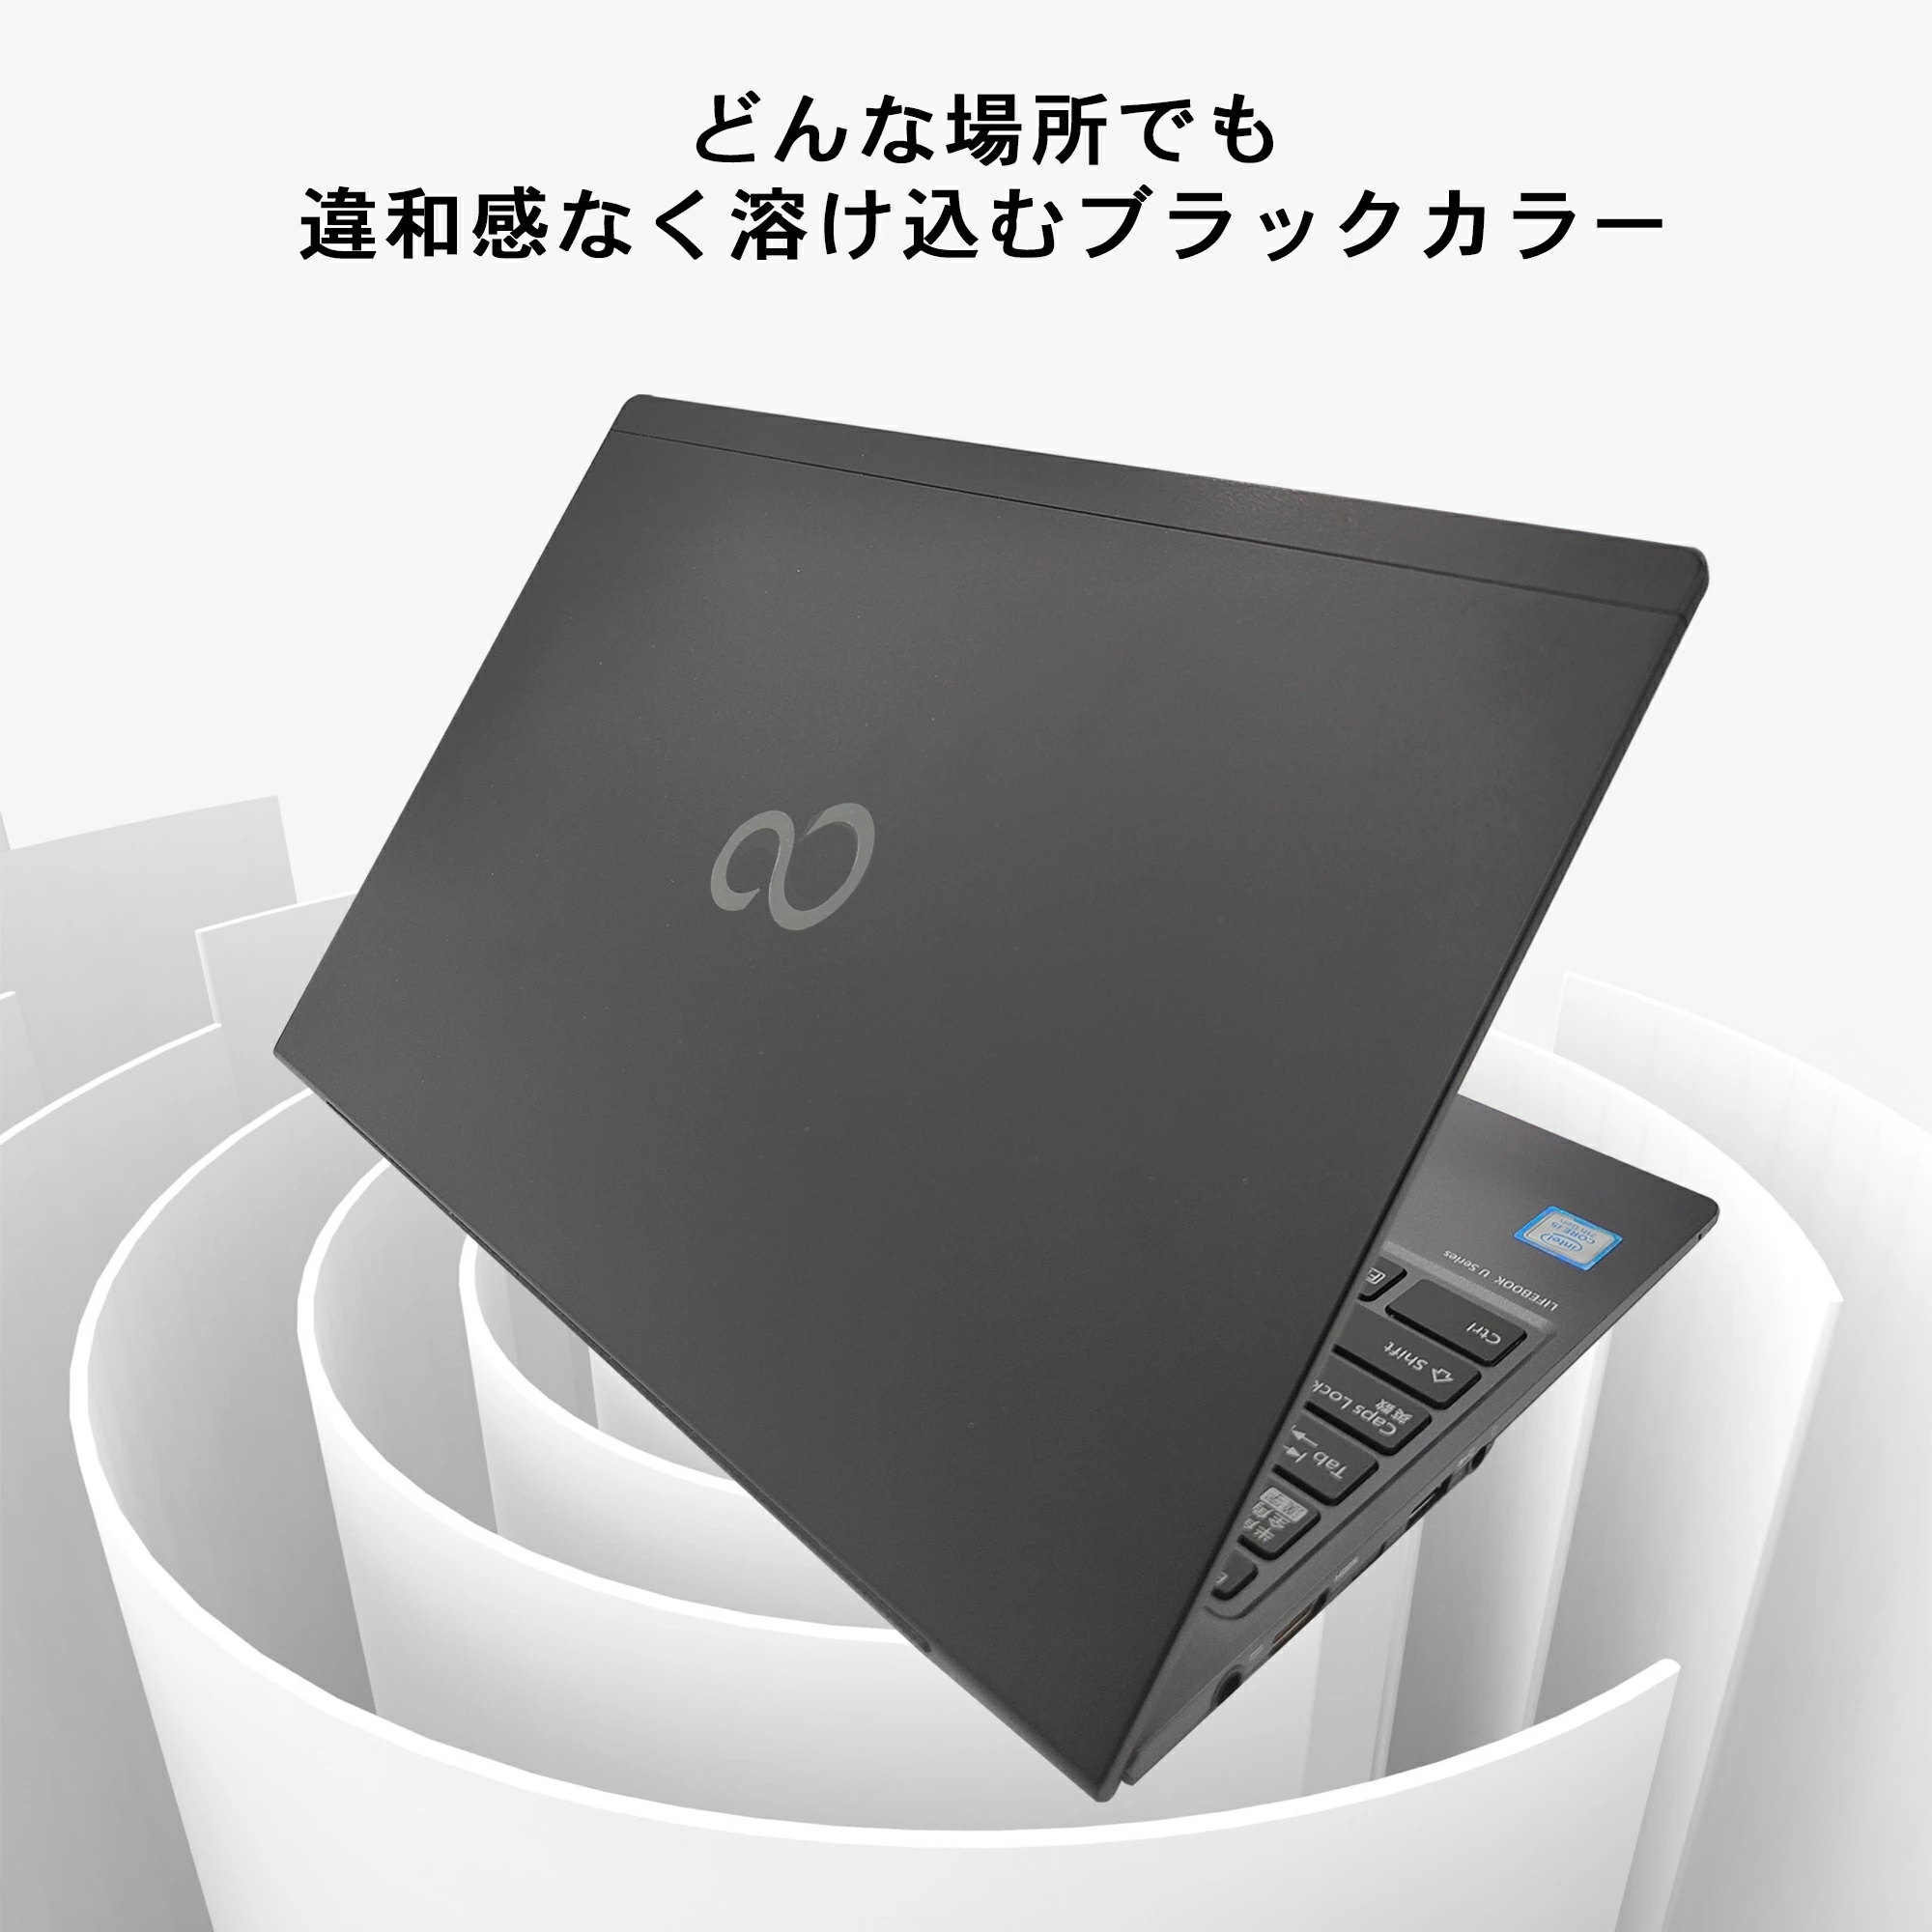 富士通ノートパソコン i5 office付き - パソコン